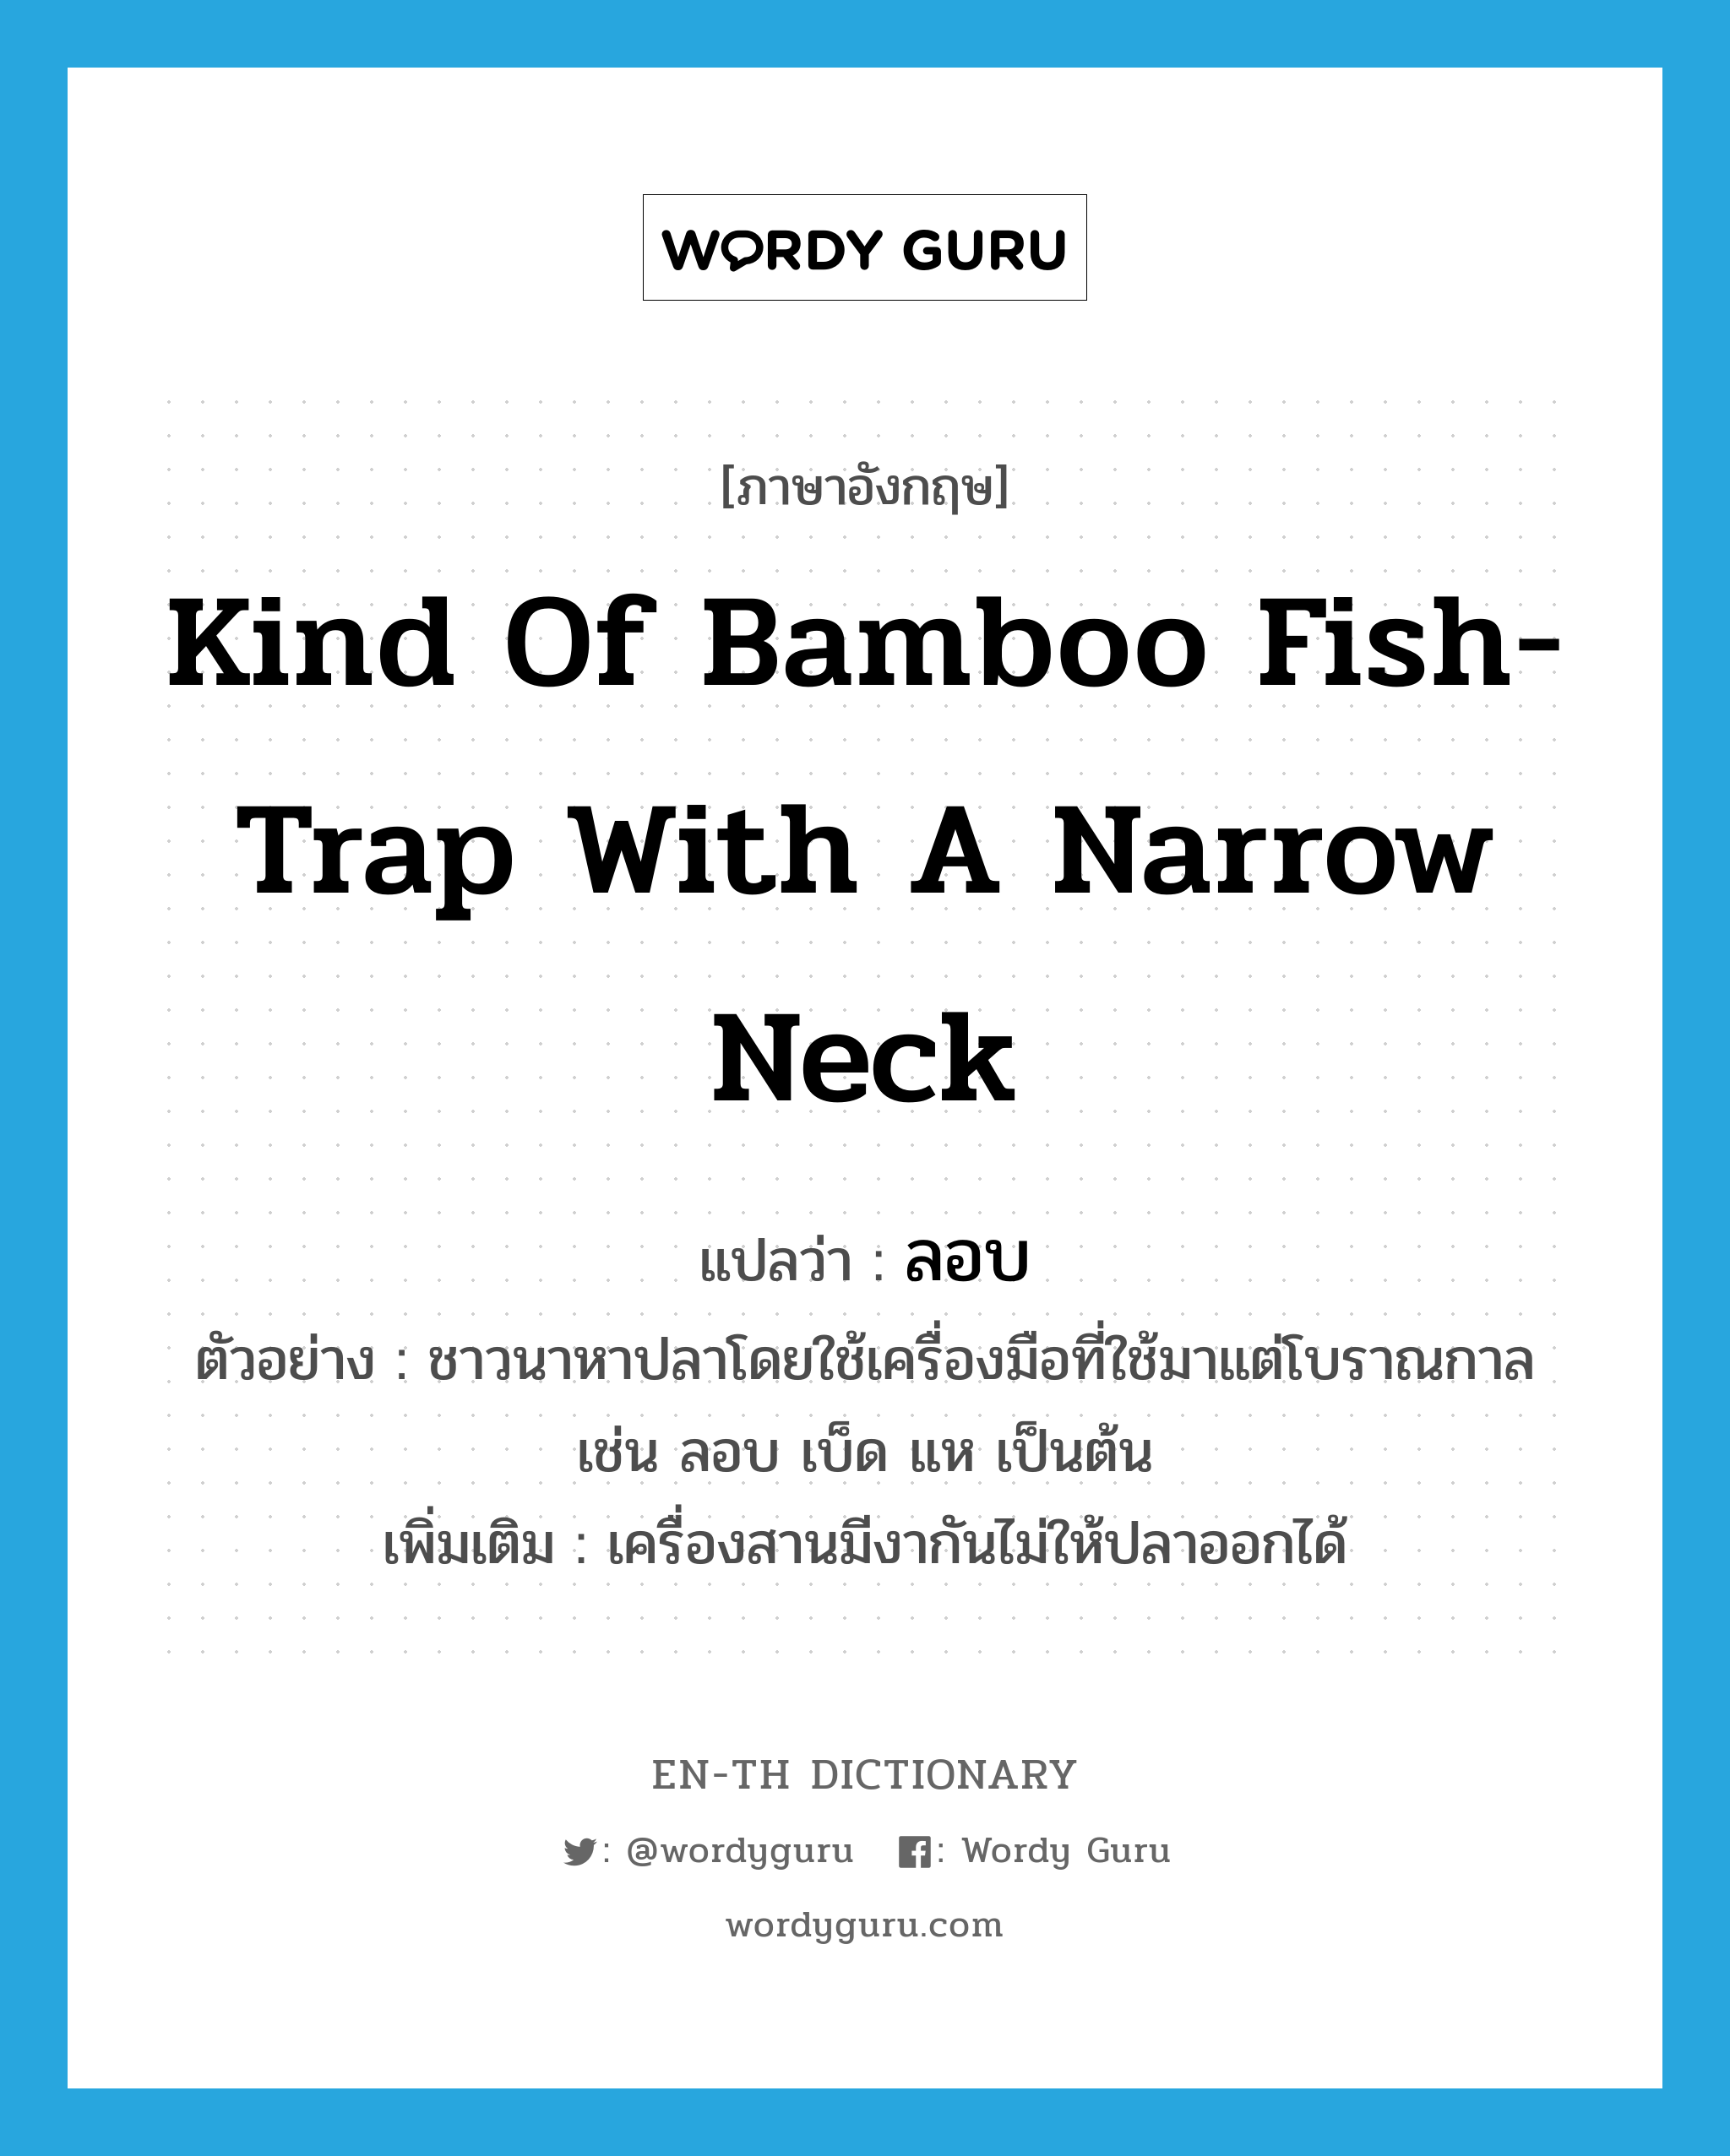 kind of bamboo fish-trap with a narrow neck แปลว่า?, คำศัพท์ภาษาอังกฤษ kind of bamboo fish-trap with a narrow neck แปลว่า ลอบ ประเภท N ตัวอย่าง ชาวนาหาปลาโดยใช้เครื่องมือที่ใช้มาแต่โบราณกาล เช่น ลอบ เบ็ด แห เป็นต้น เพิ่มเติม เครื่องสานมีงากันไม่ให้ปลาออกได้ หมวด N